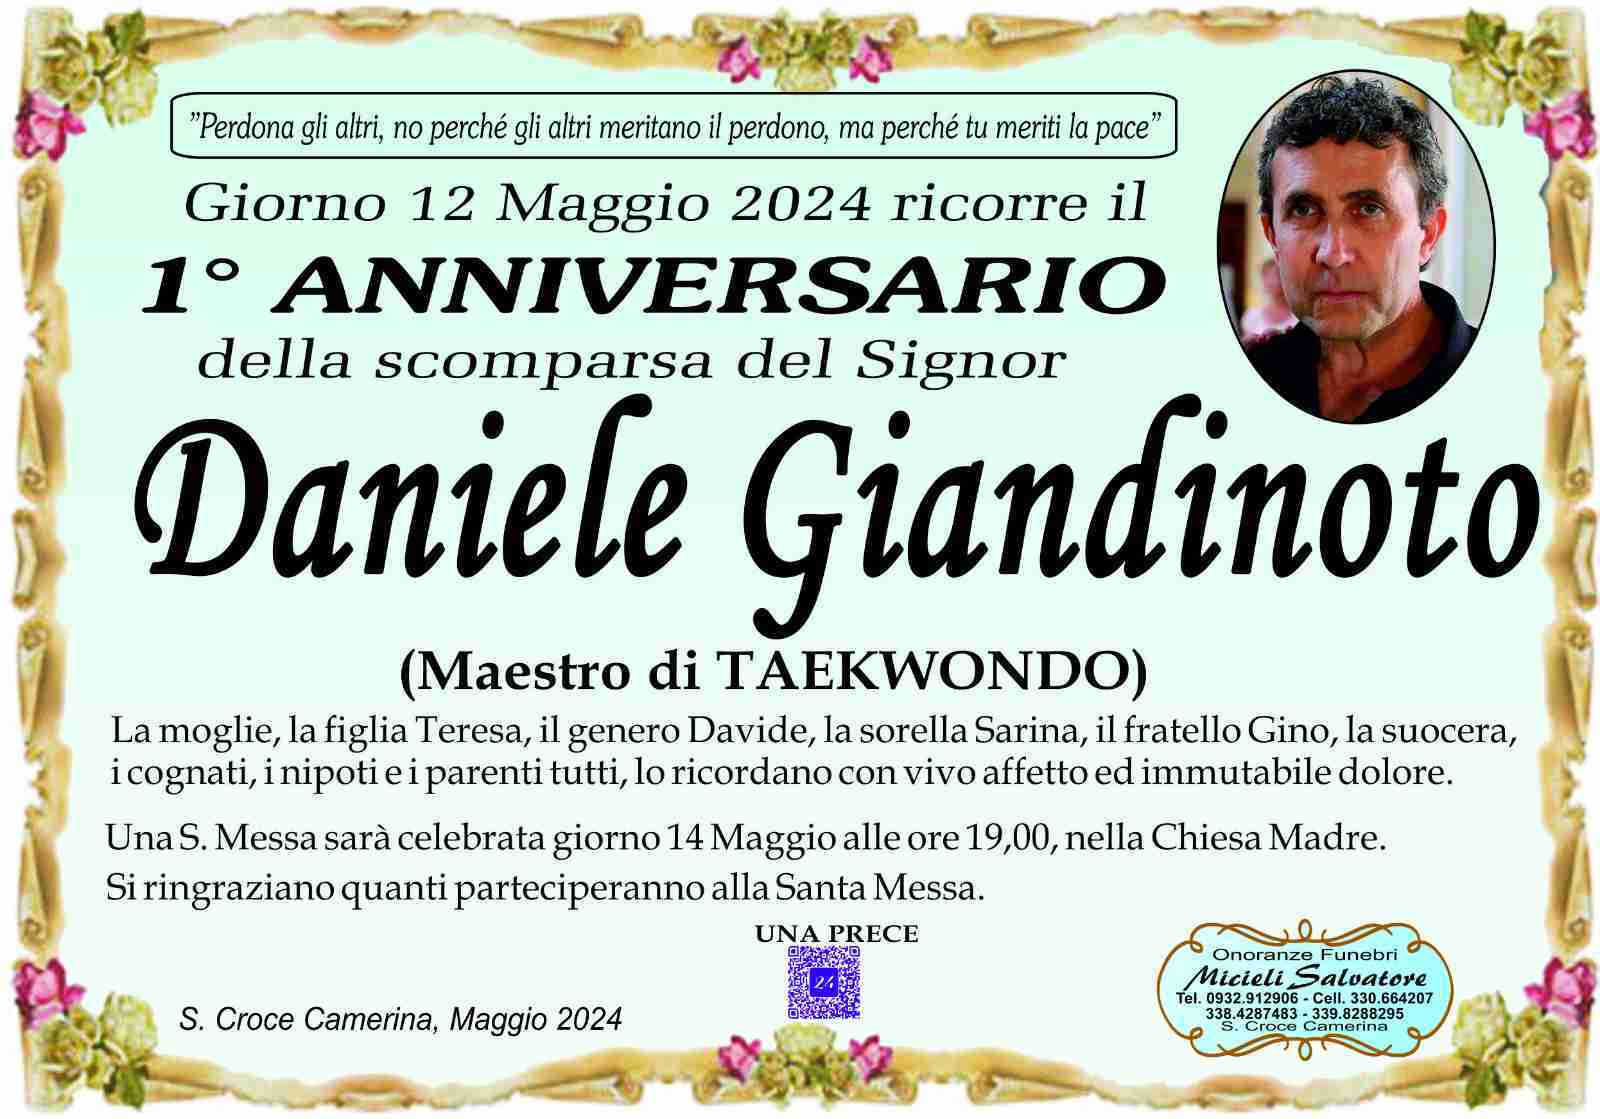 Daniele Giandinoto